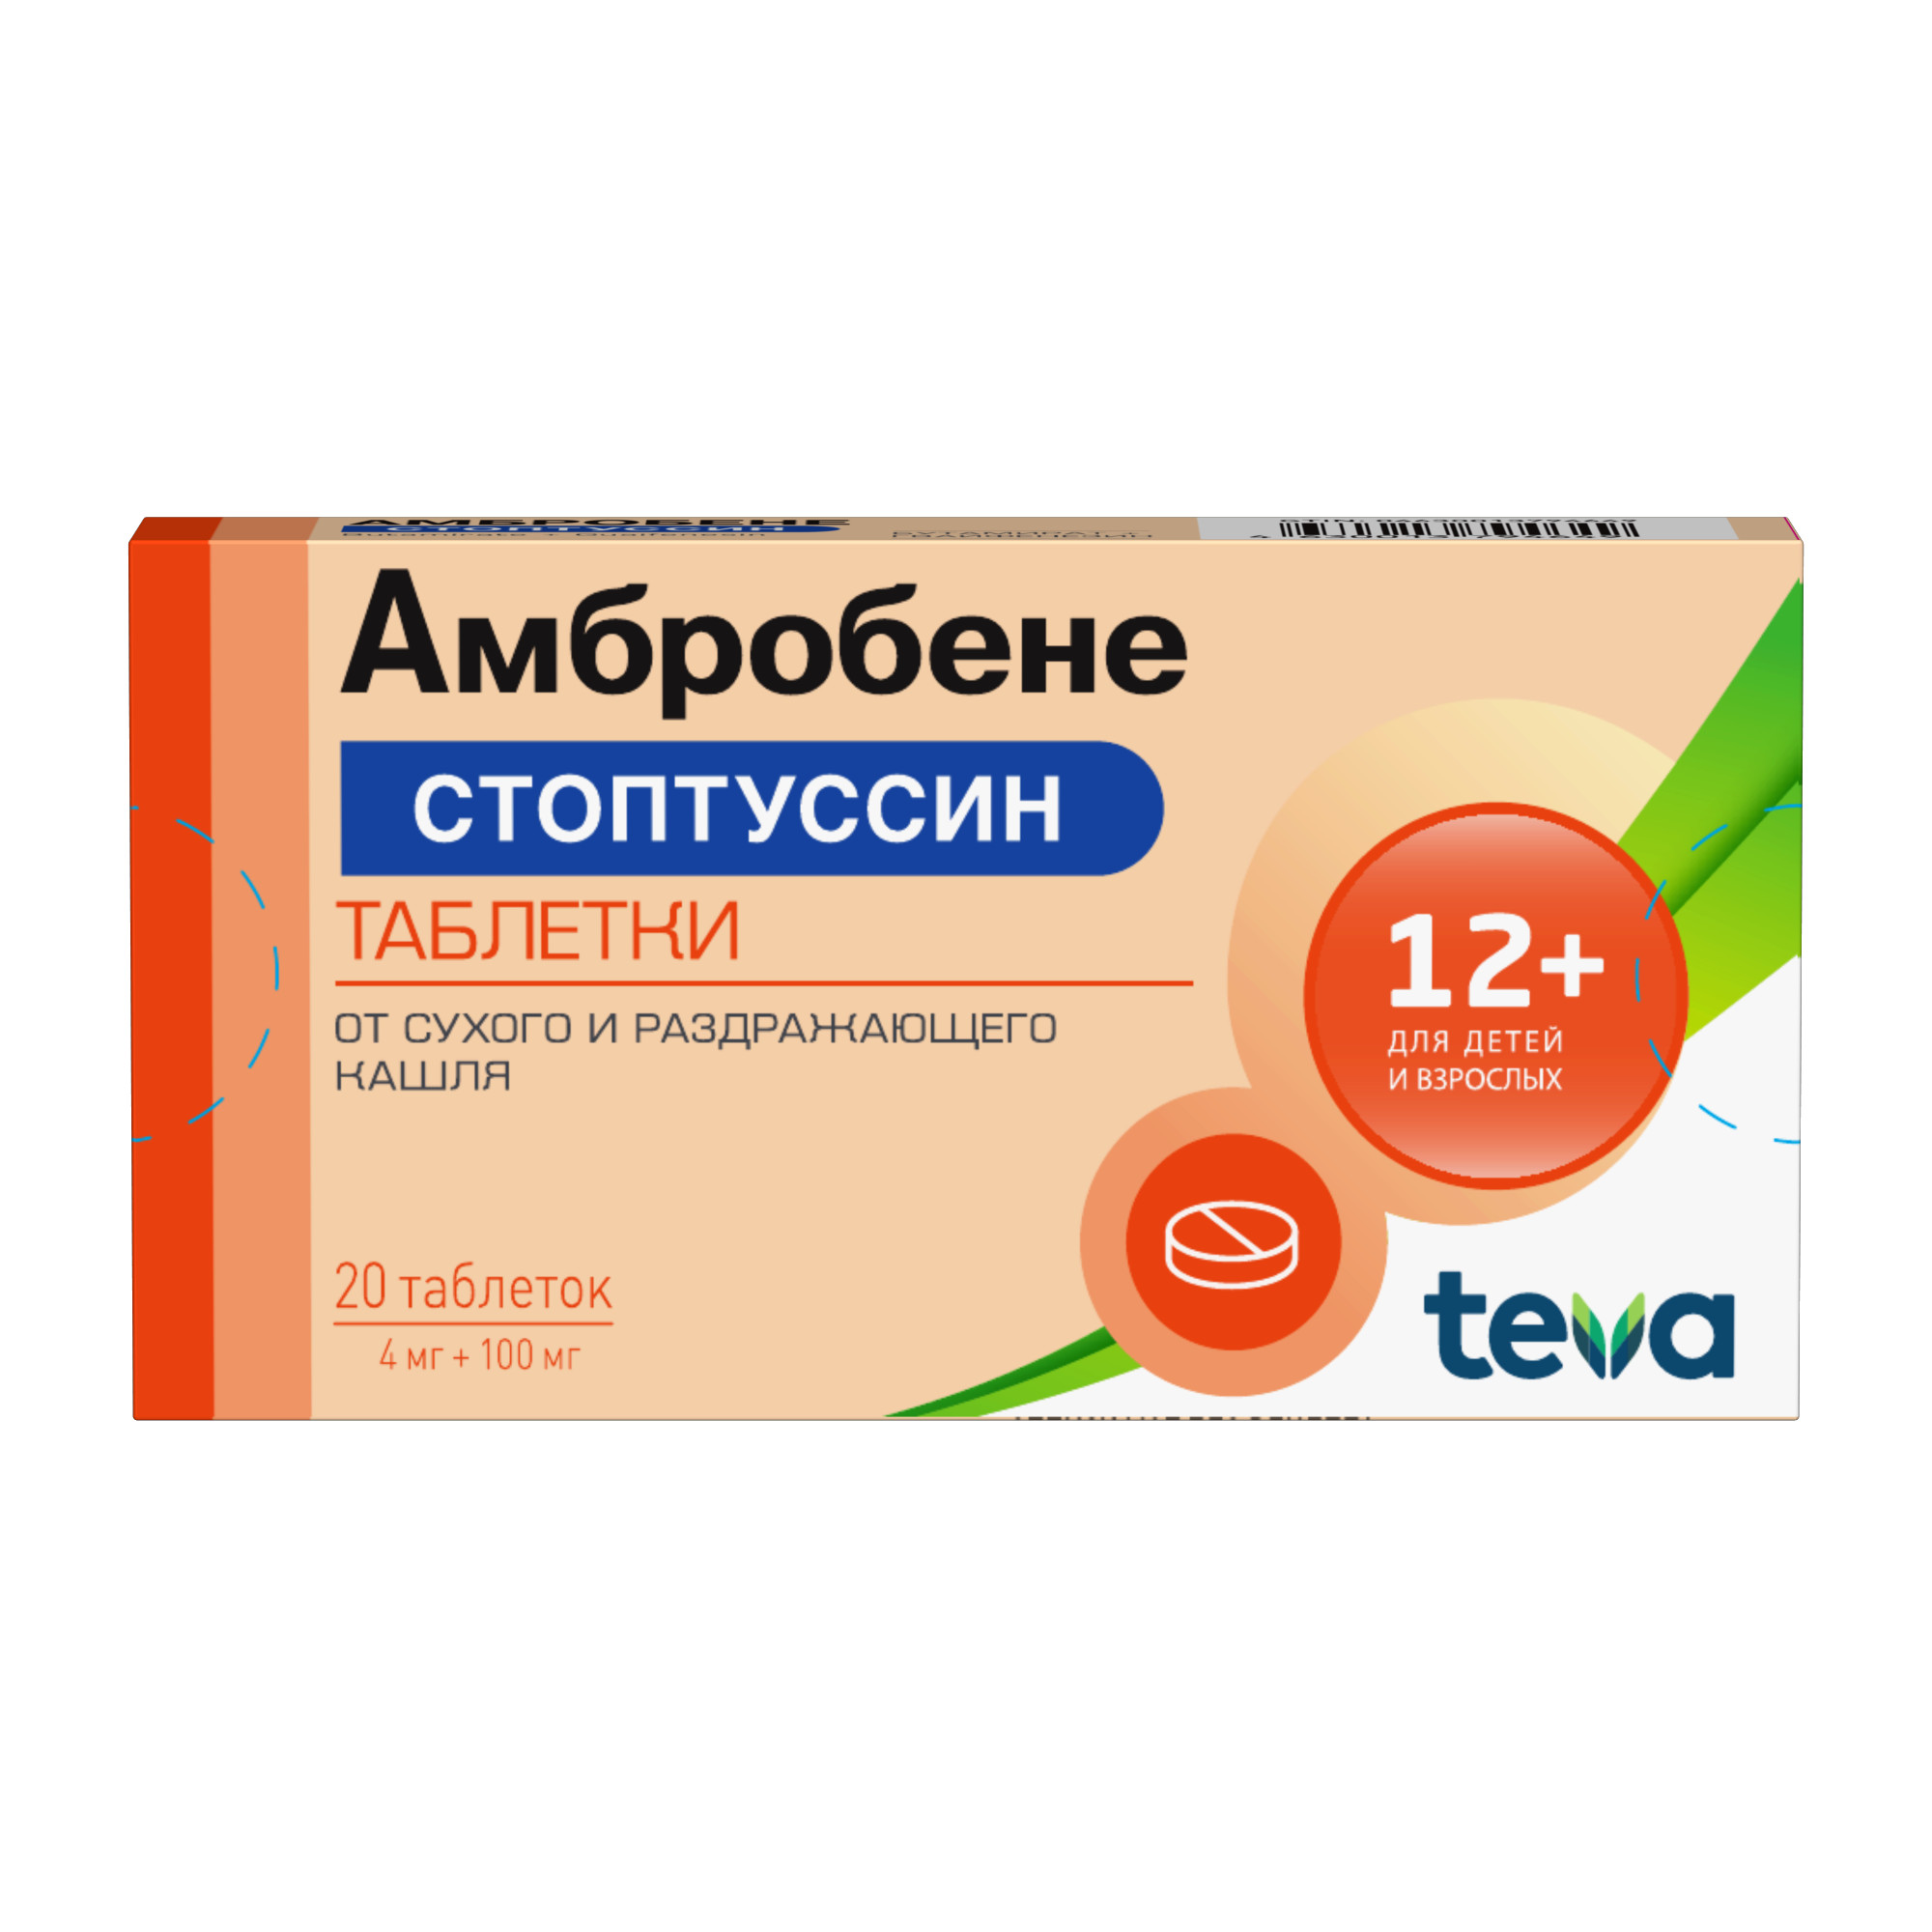 Амбробене Стоптуссин таблетки 4мг+100мг 20шт - купить лекарство в Москве с  экспресс доставкой на дом, официальная инструкция по применению